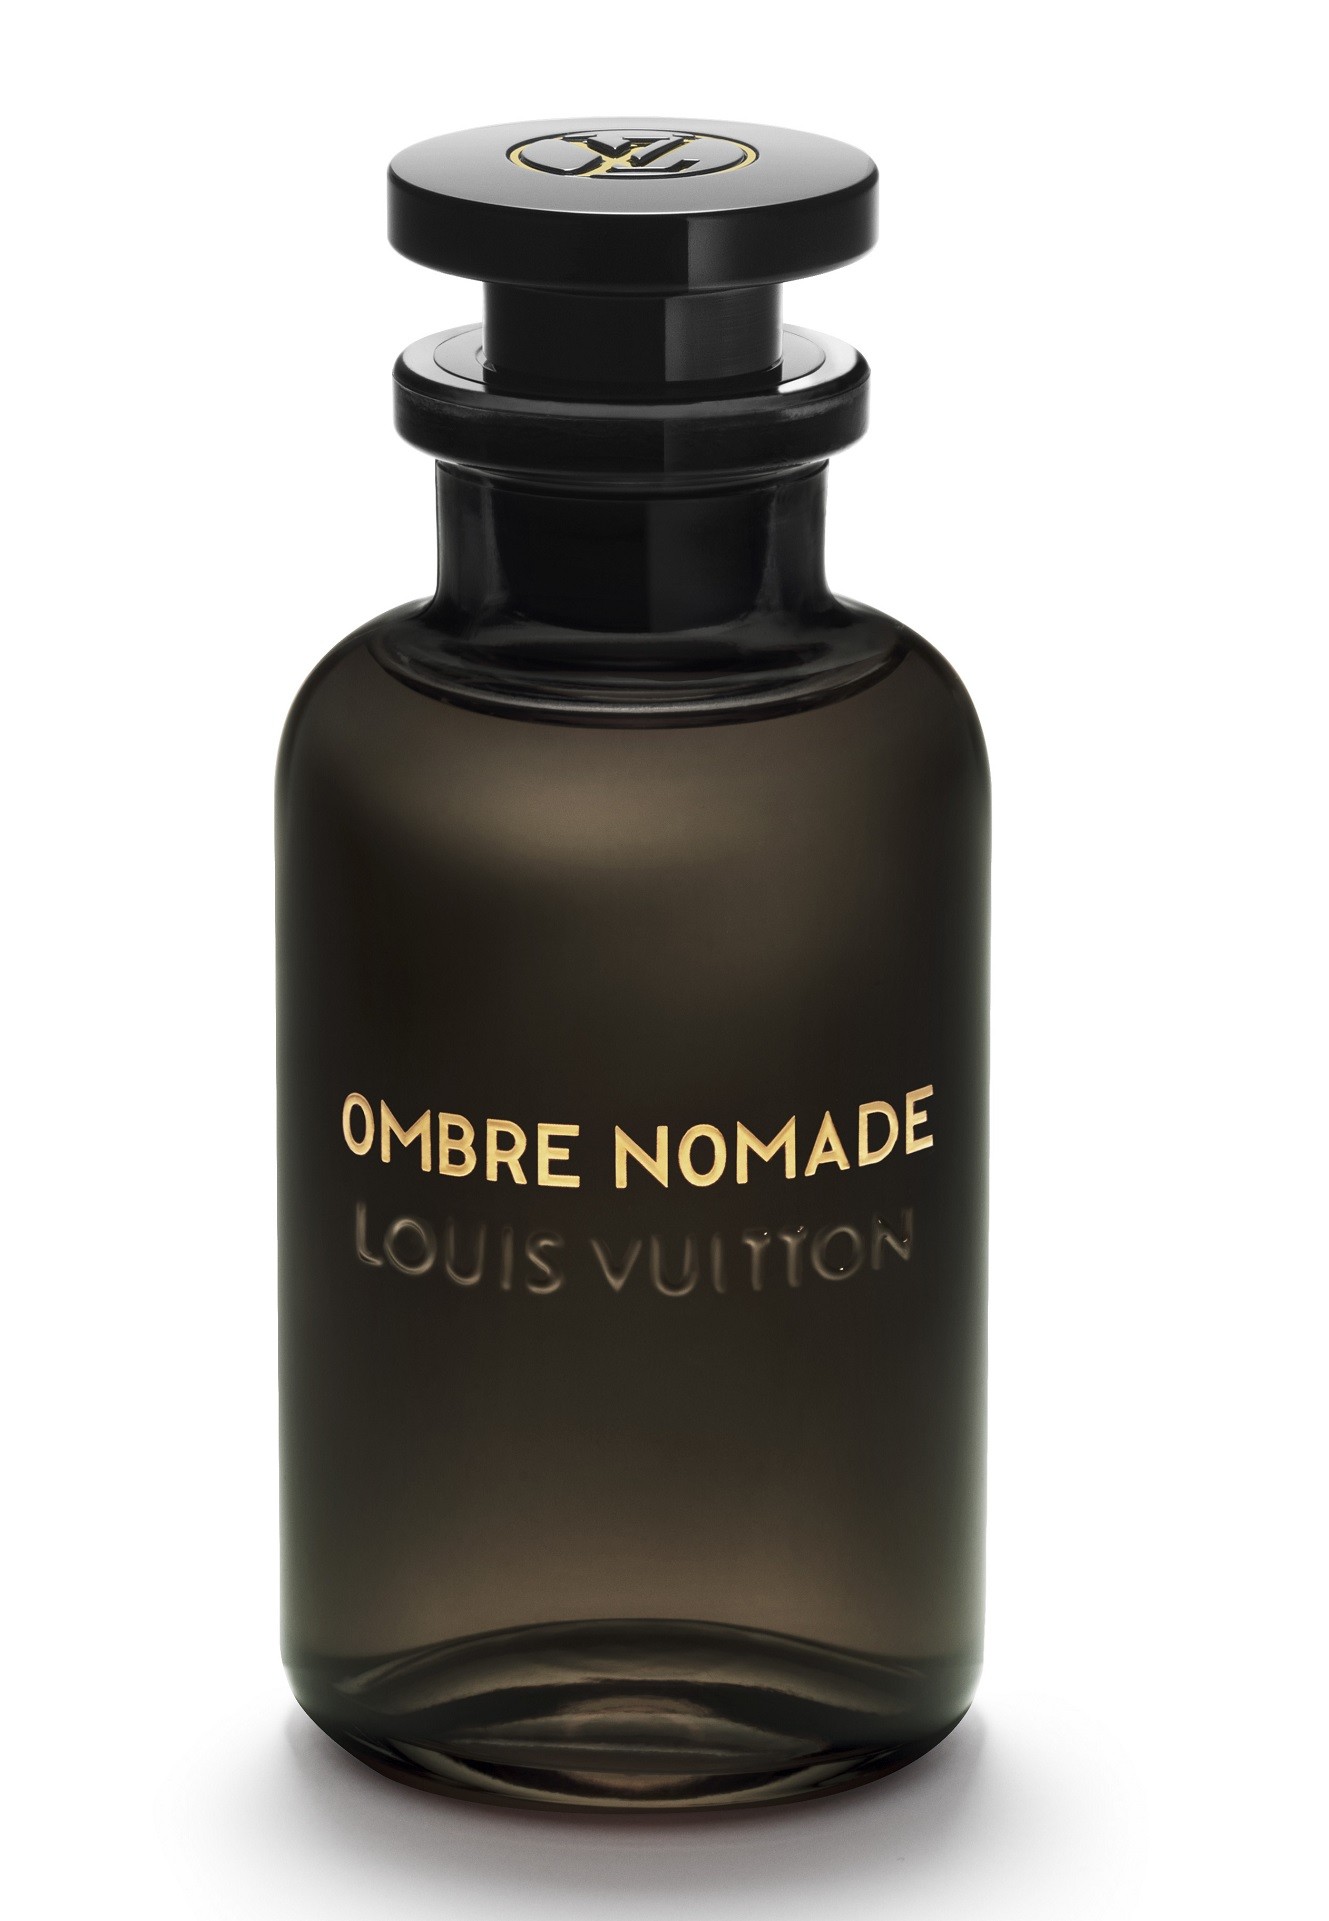 路易威登 Louis Vuitton Ombre Nomade|香水评论|香调|价格|味道|香评|评价|-香水时代NoseTime.com